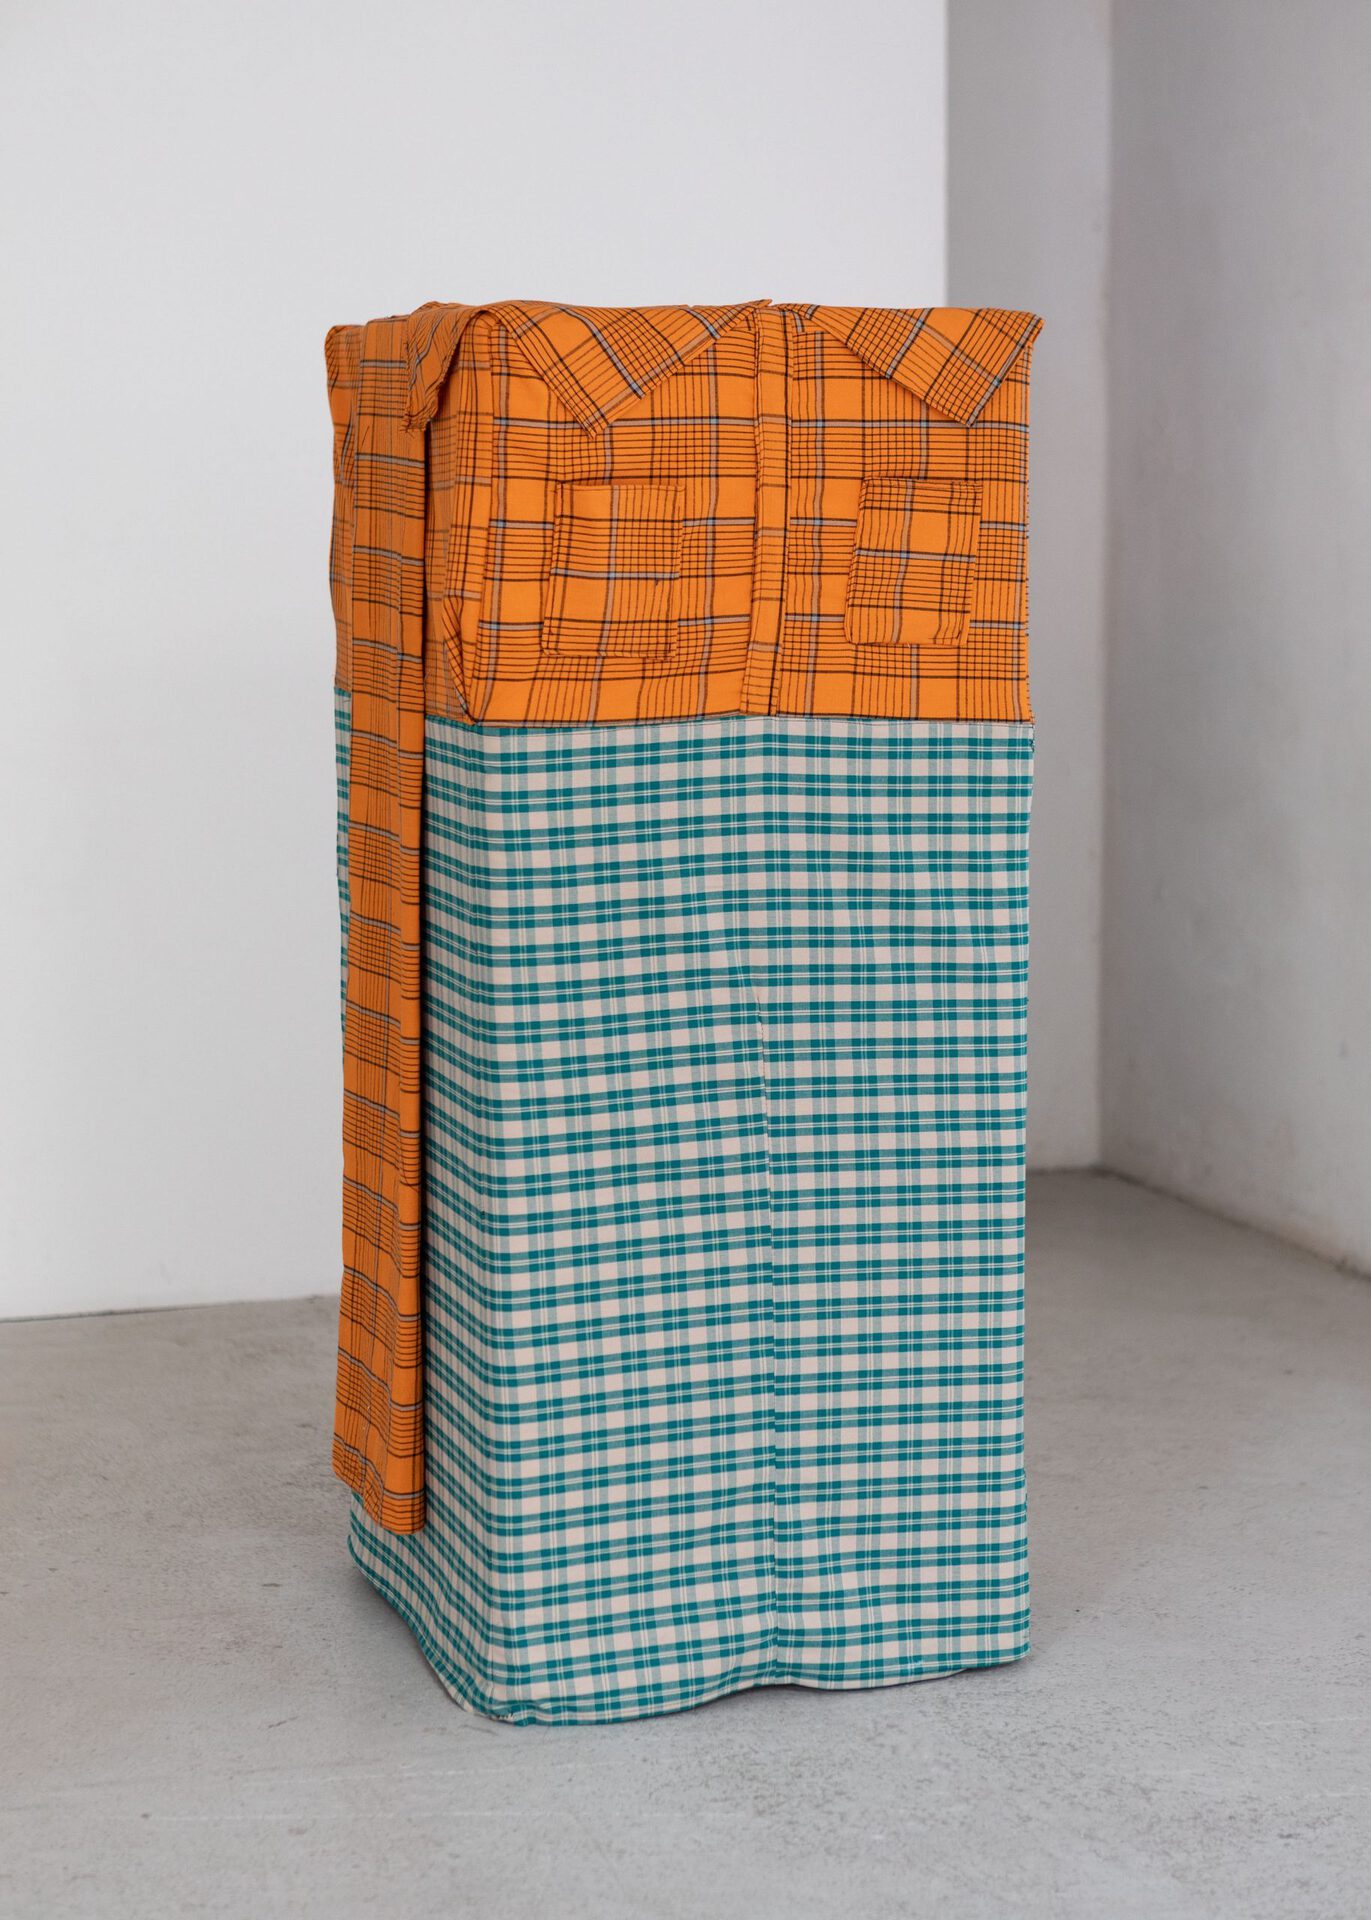 Fridge Man, 2021 fabric, fridge 120 x 50 x 55 cm